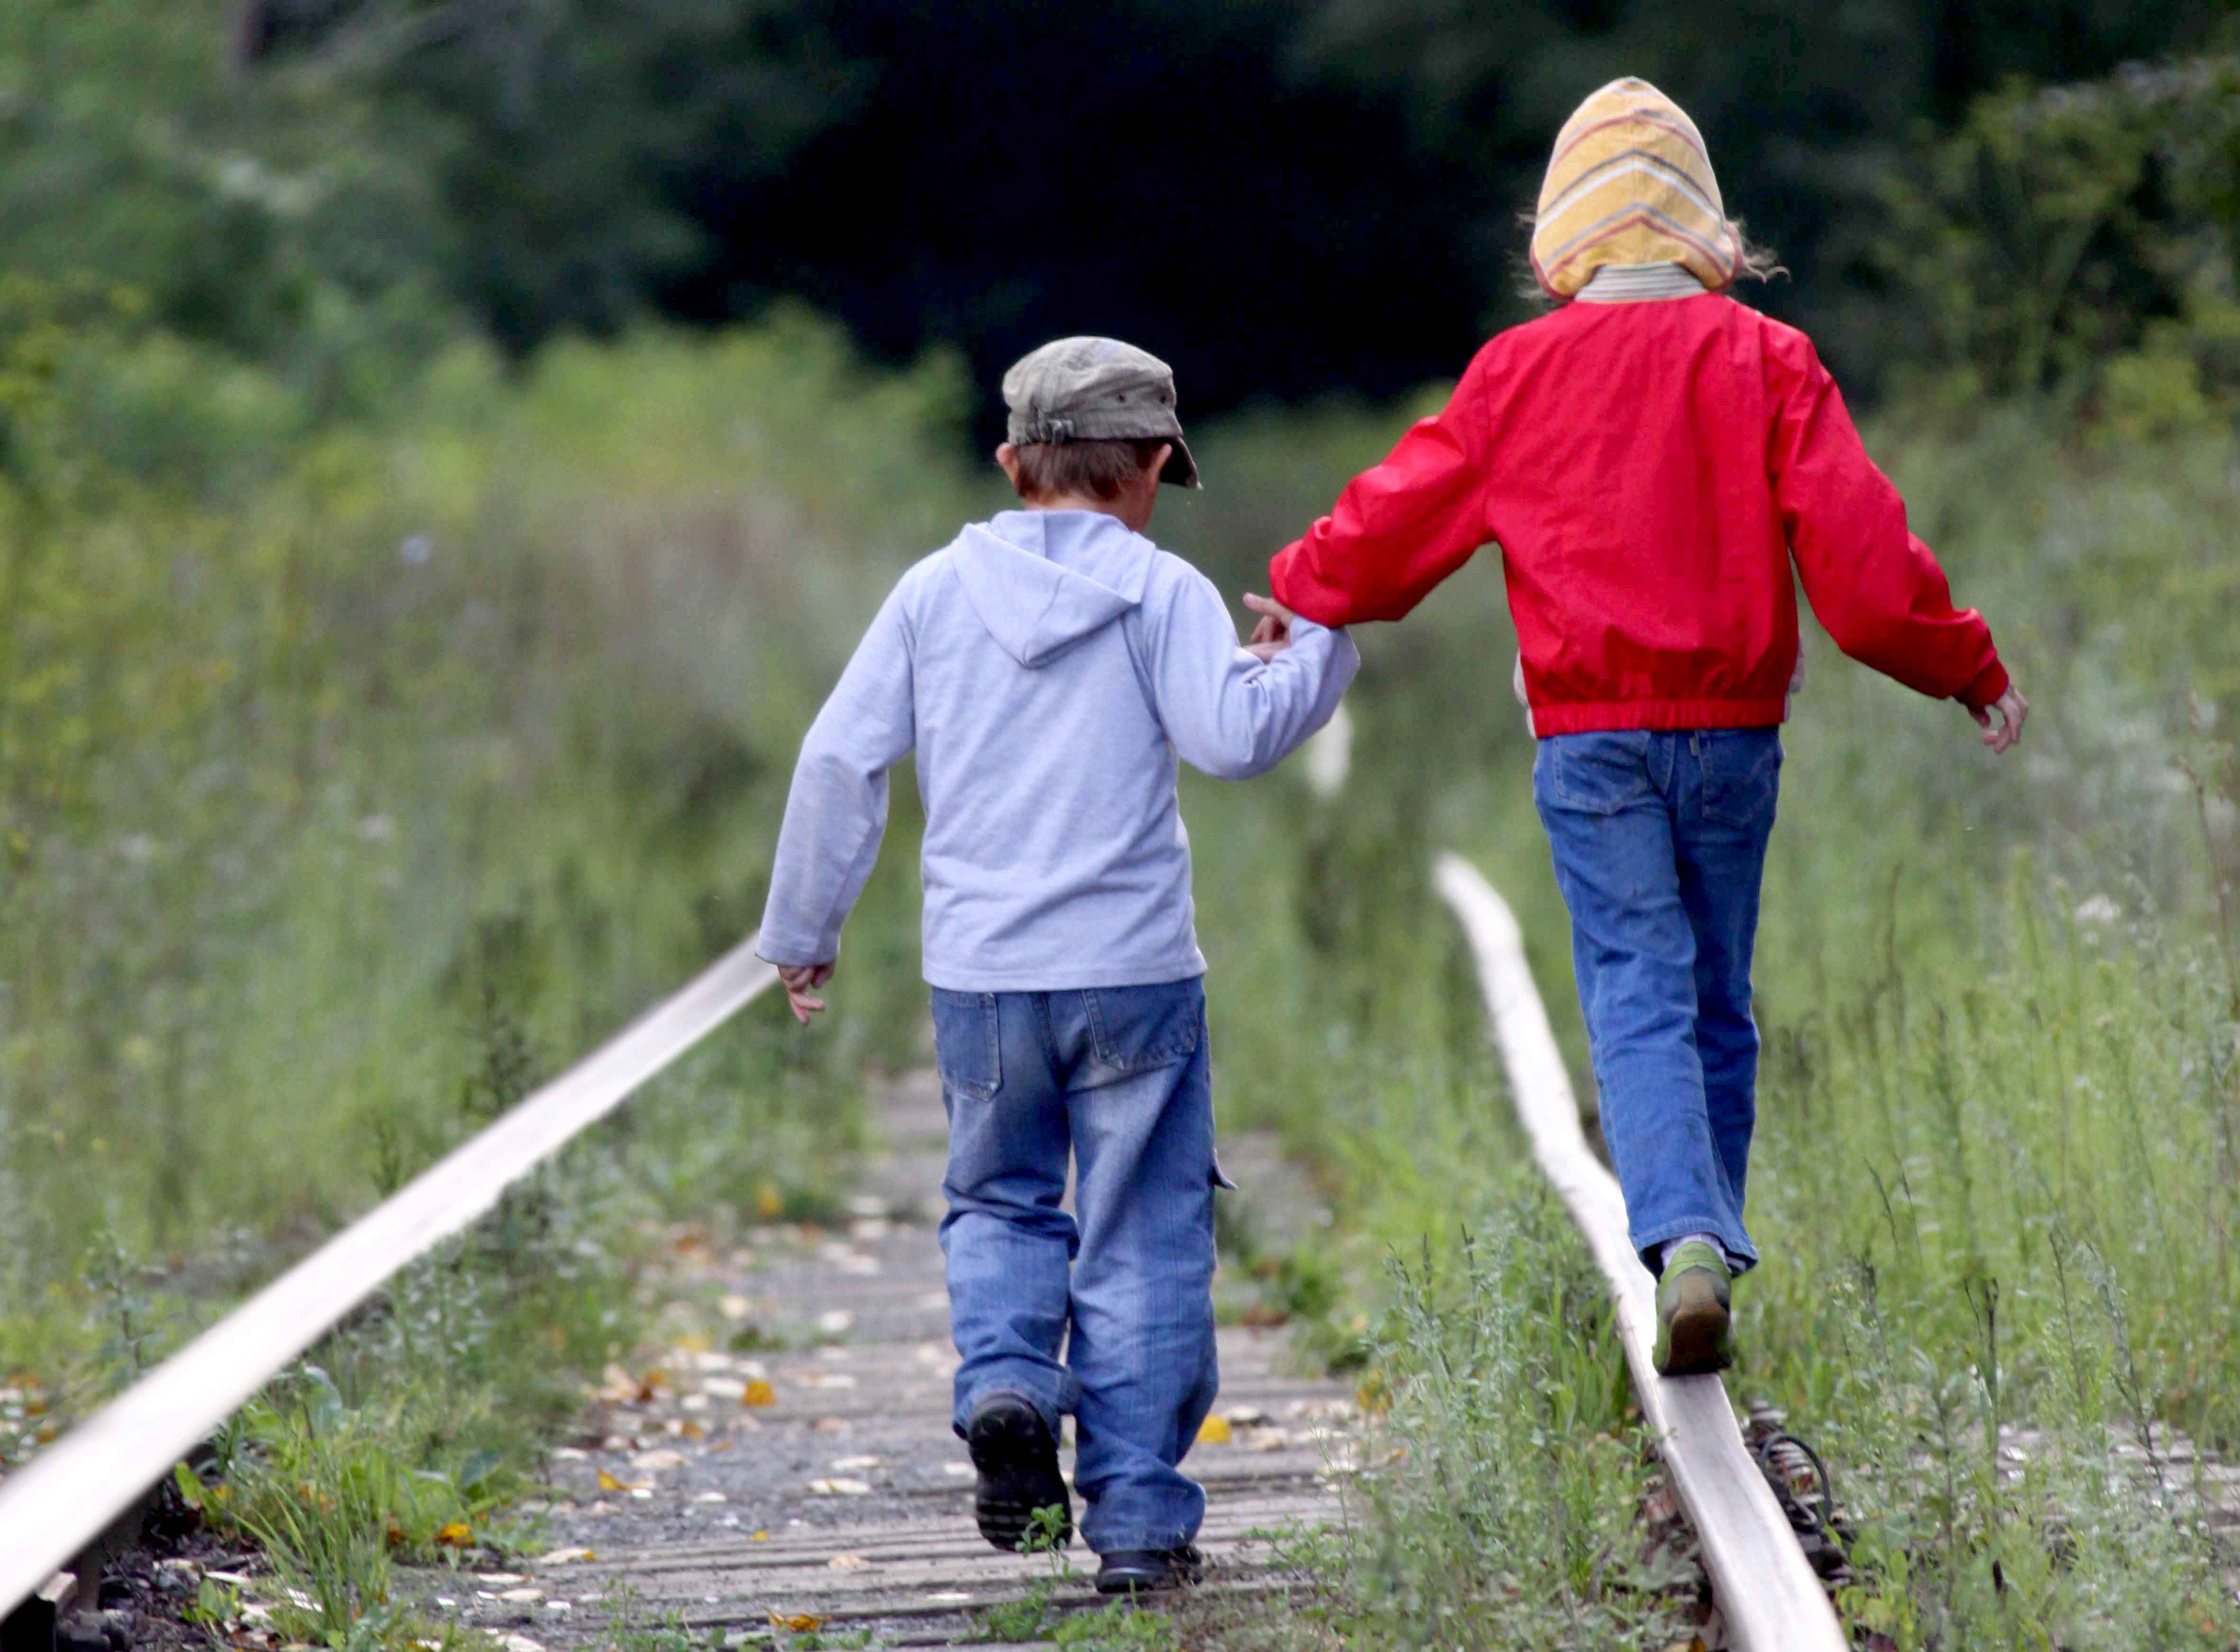 Ребенок играет на дороге. Железная дорога для детей. Дети на ЖД путях. Дети идут по дороге. Детский травматизм на железной дороге.